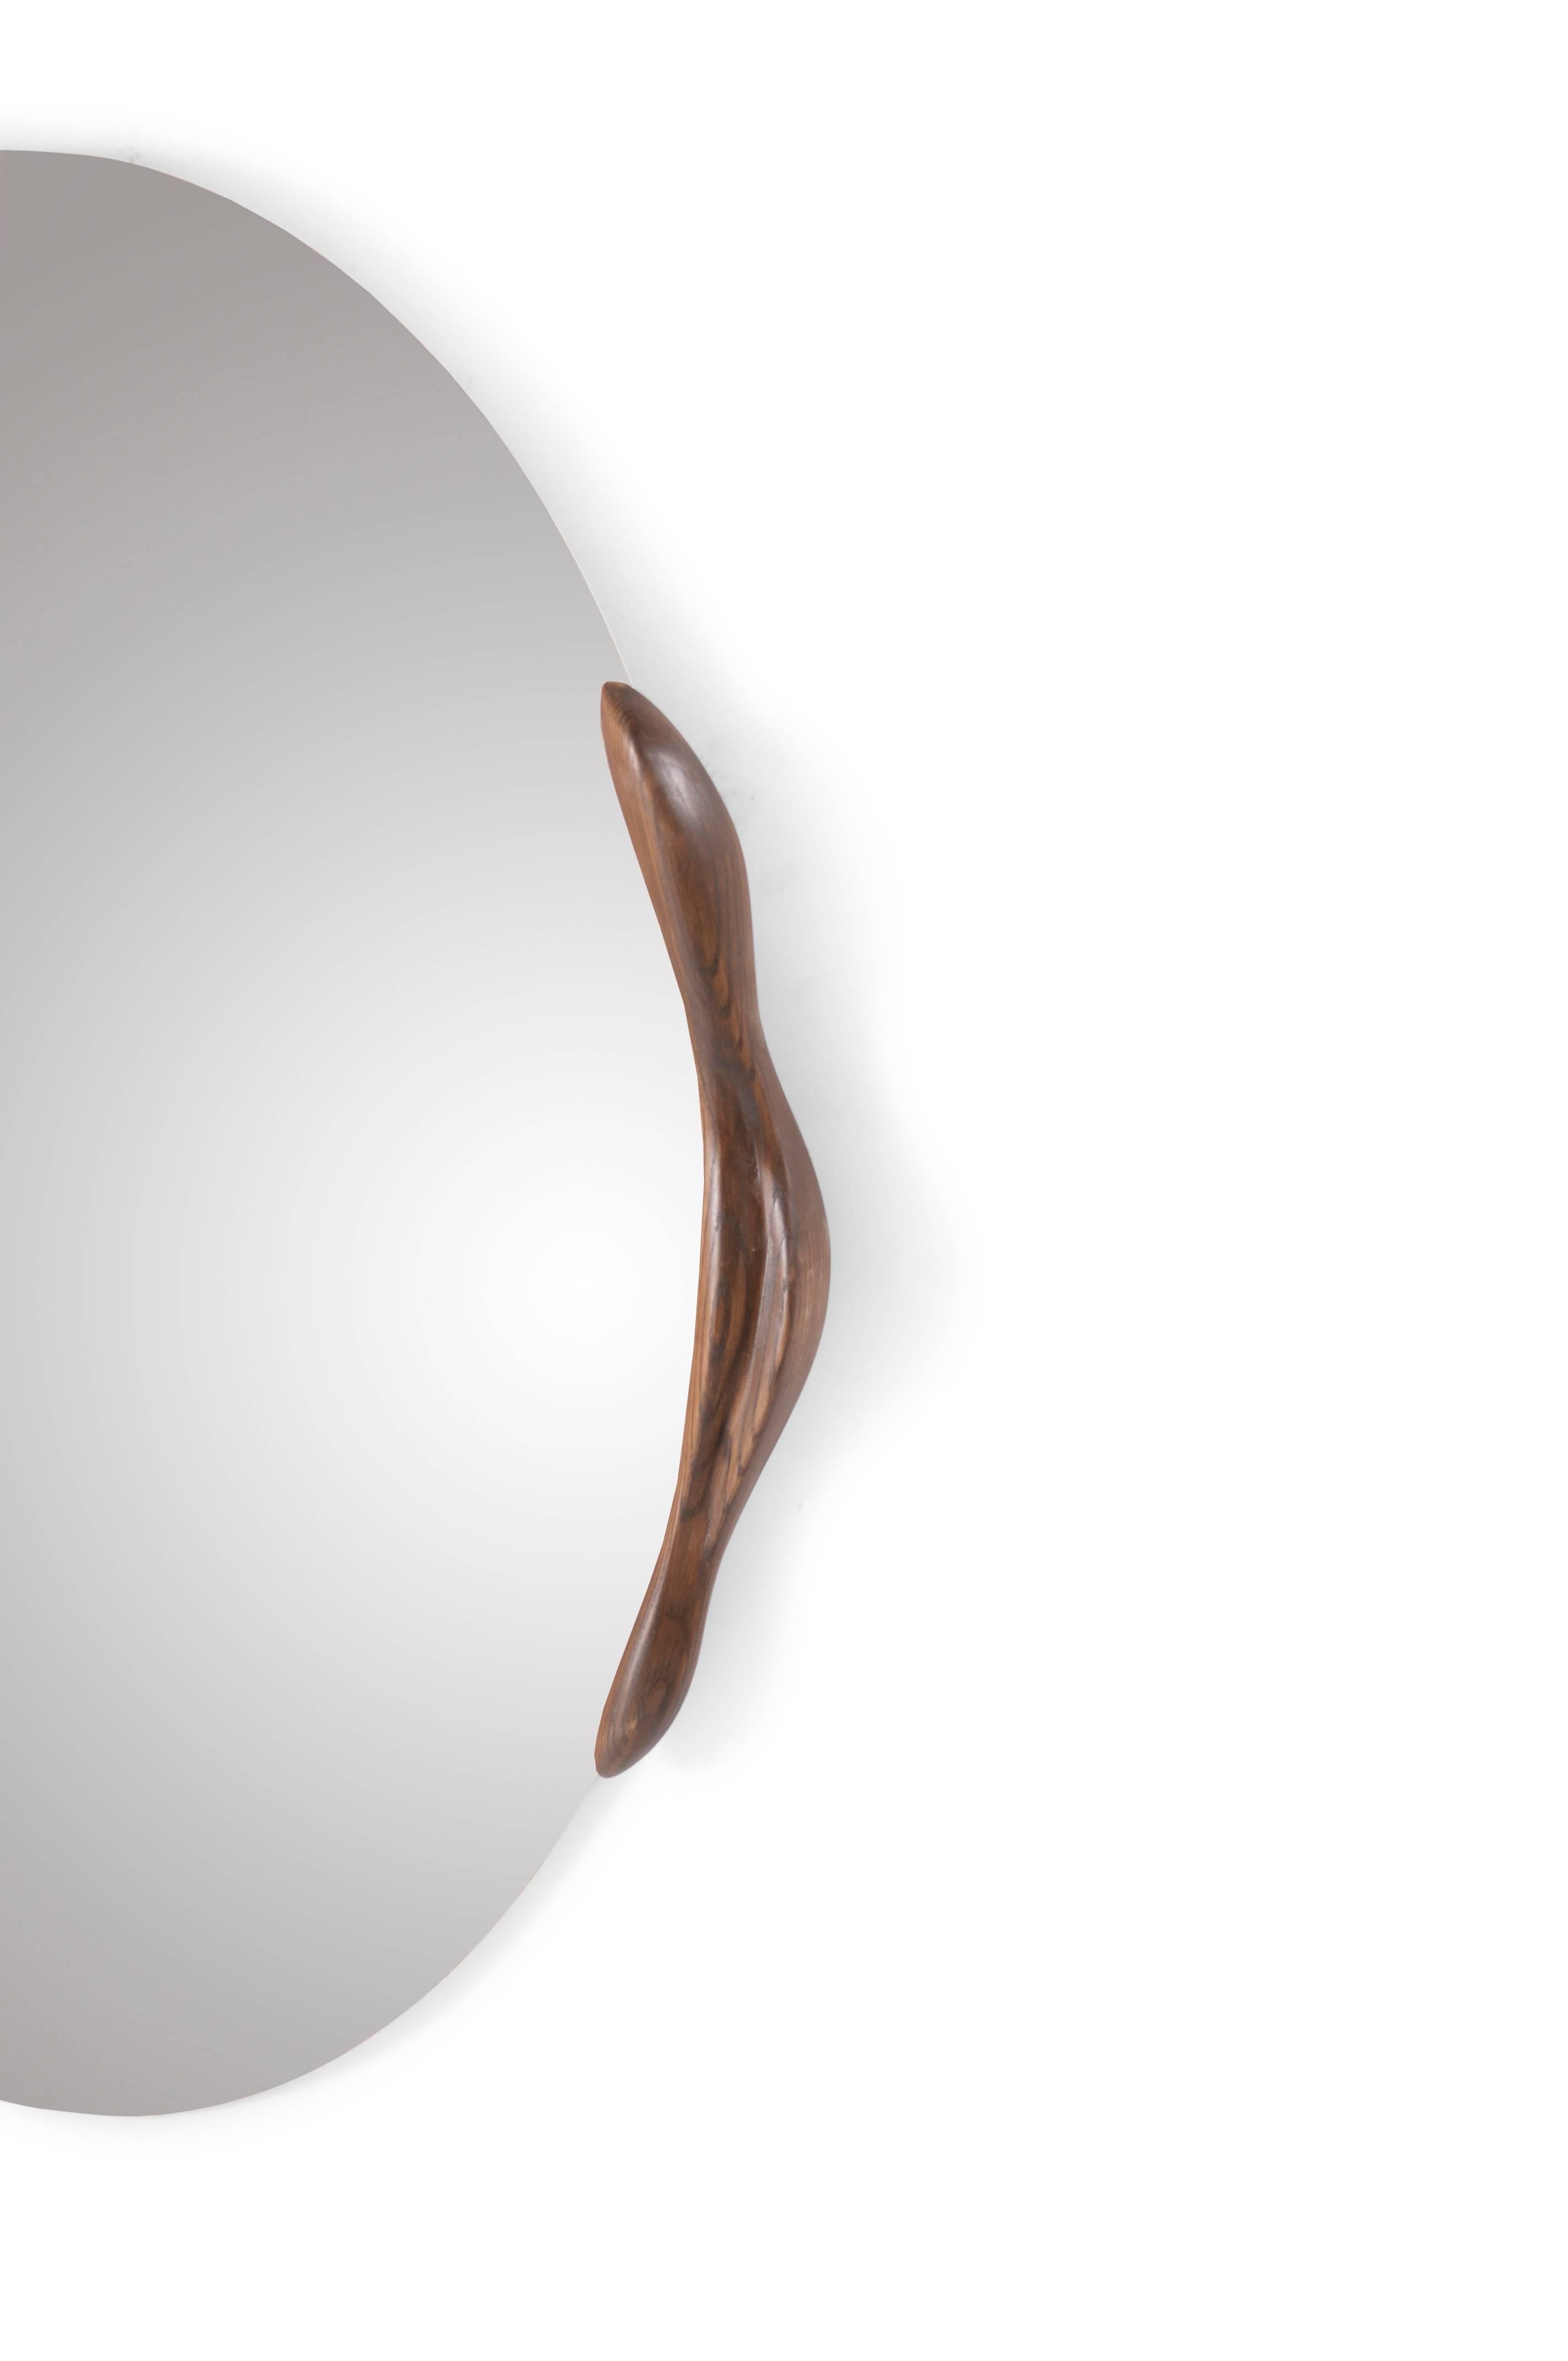 Miroir de forme ovale en frêne teinté noyer rouillé, conçu et fabriqué par Amorph.
Epaisseur du miroir 1/4